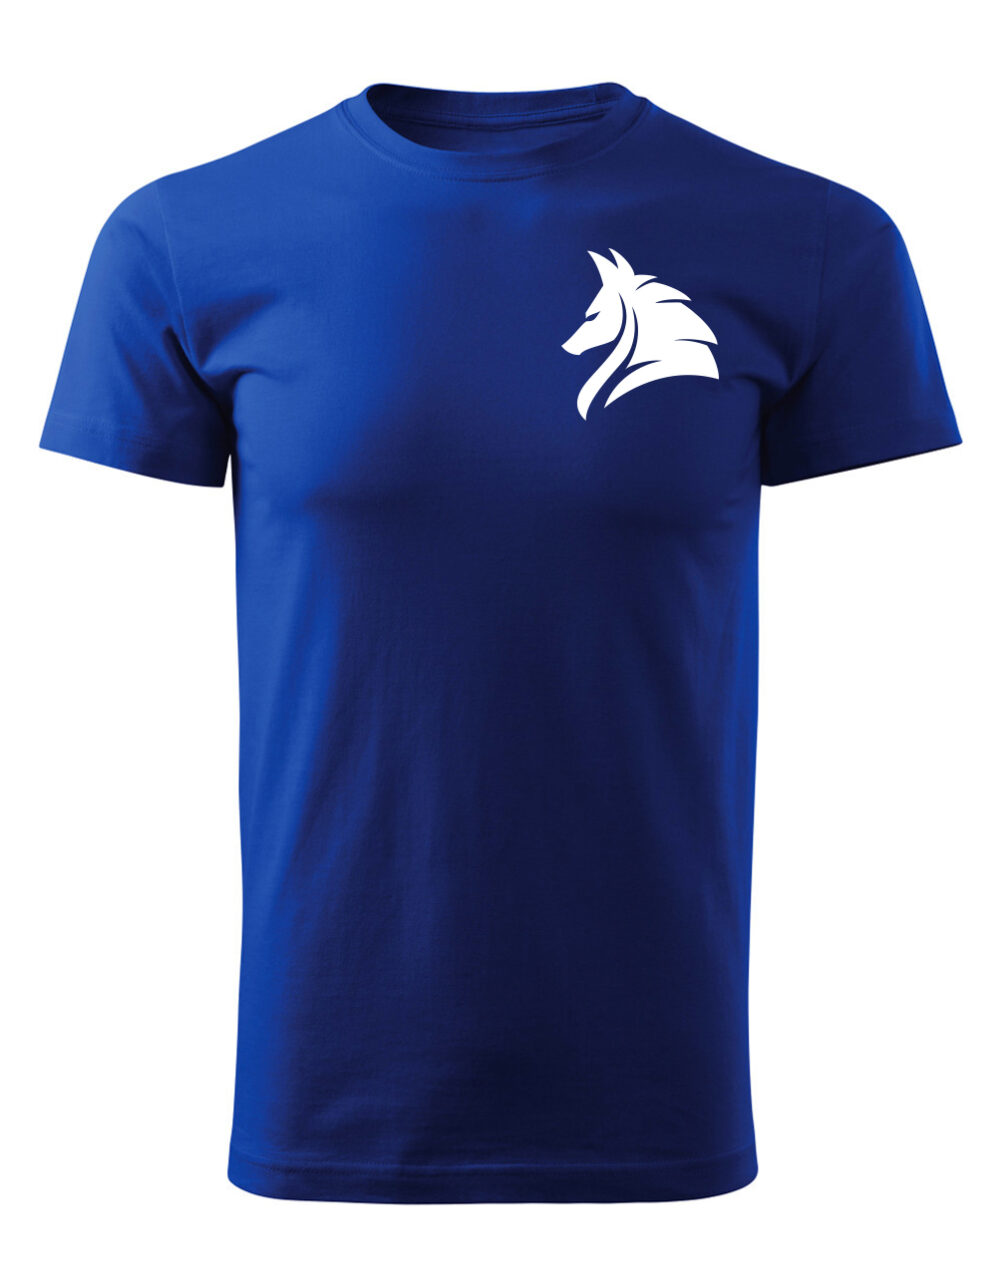 Pánské tričko s potiskem Vlk královská modrá